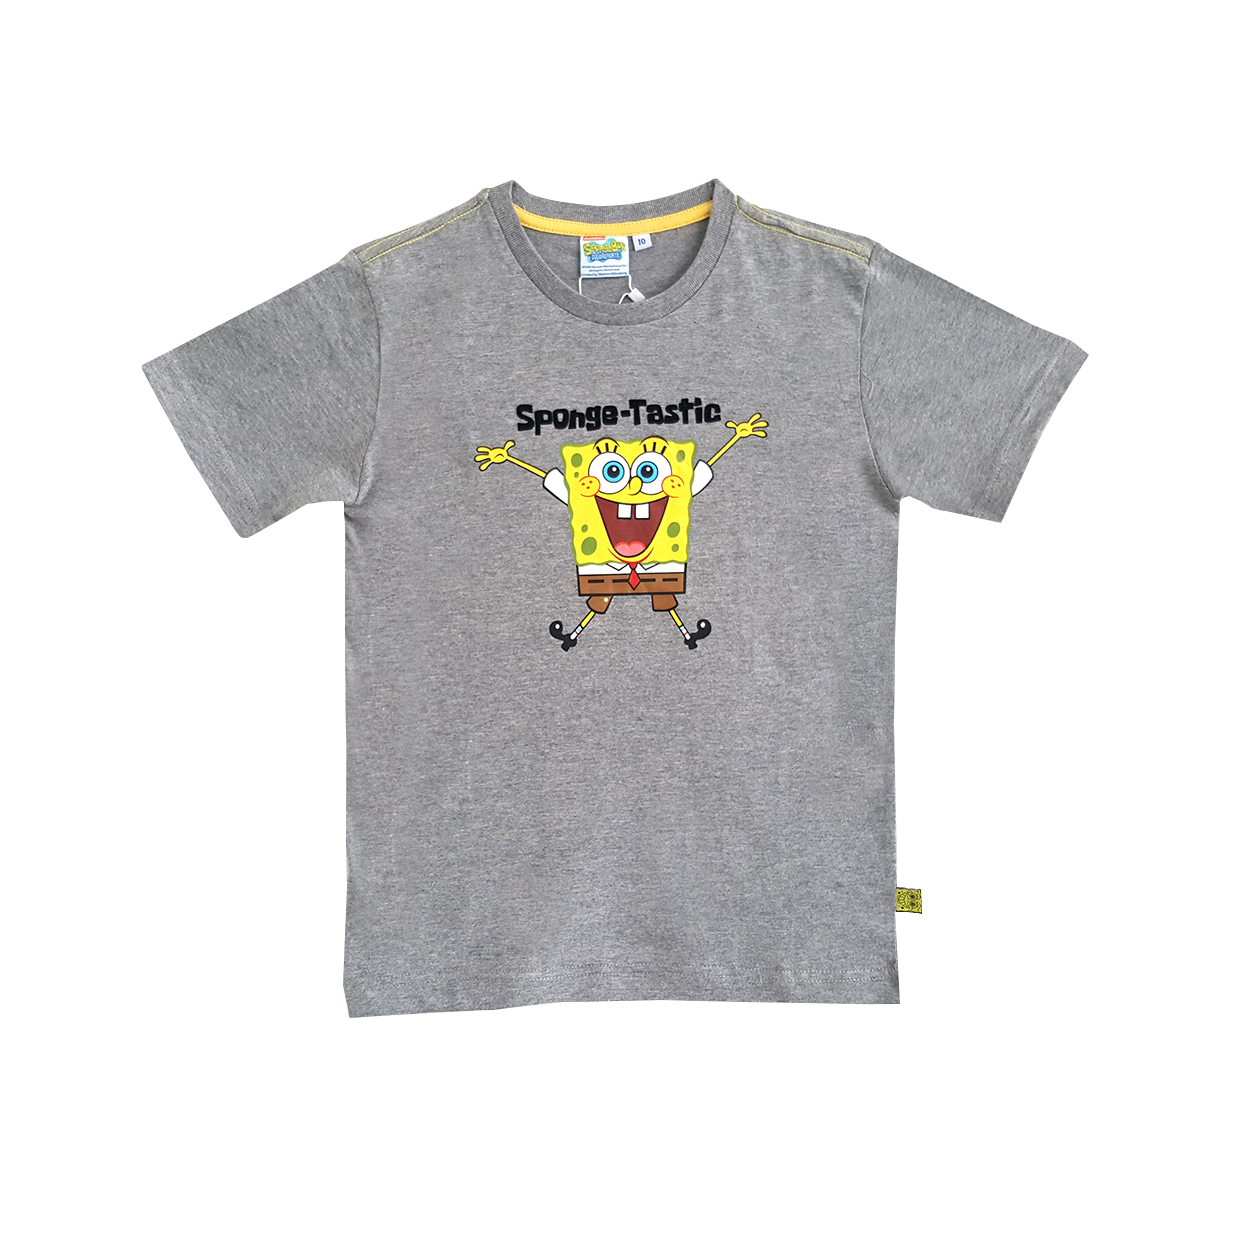 Spongebob Kids Graphic T-Shirt I COMMON SENSE